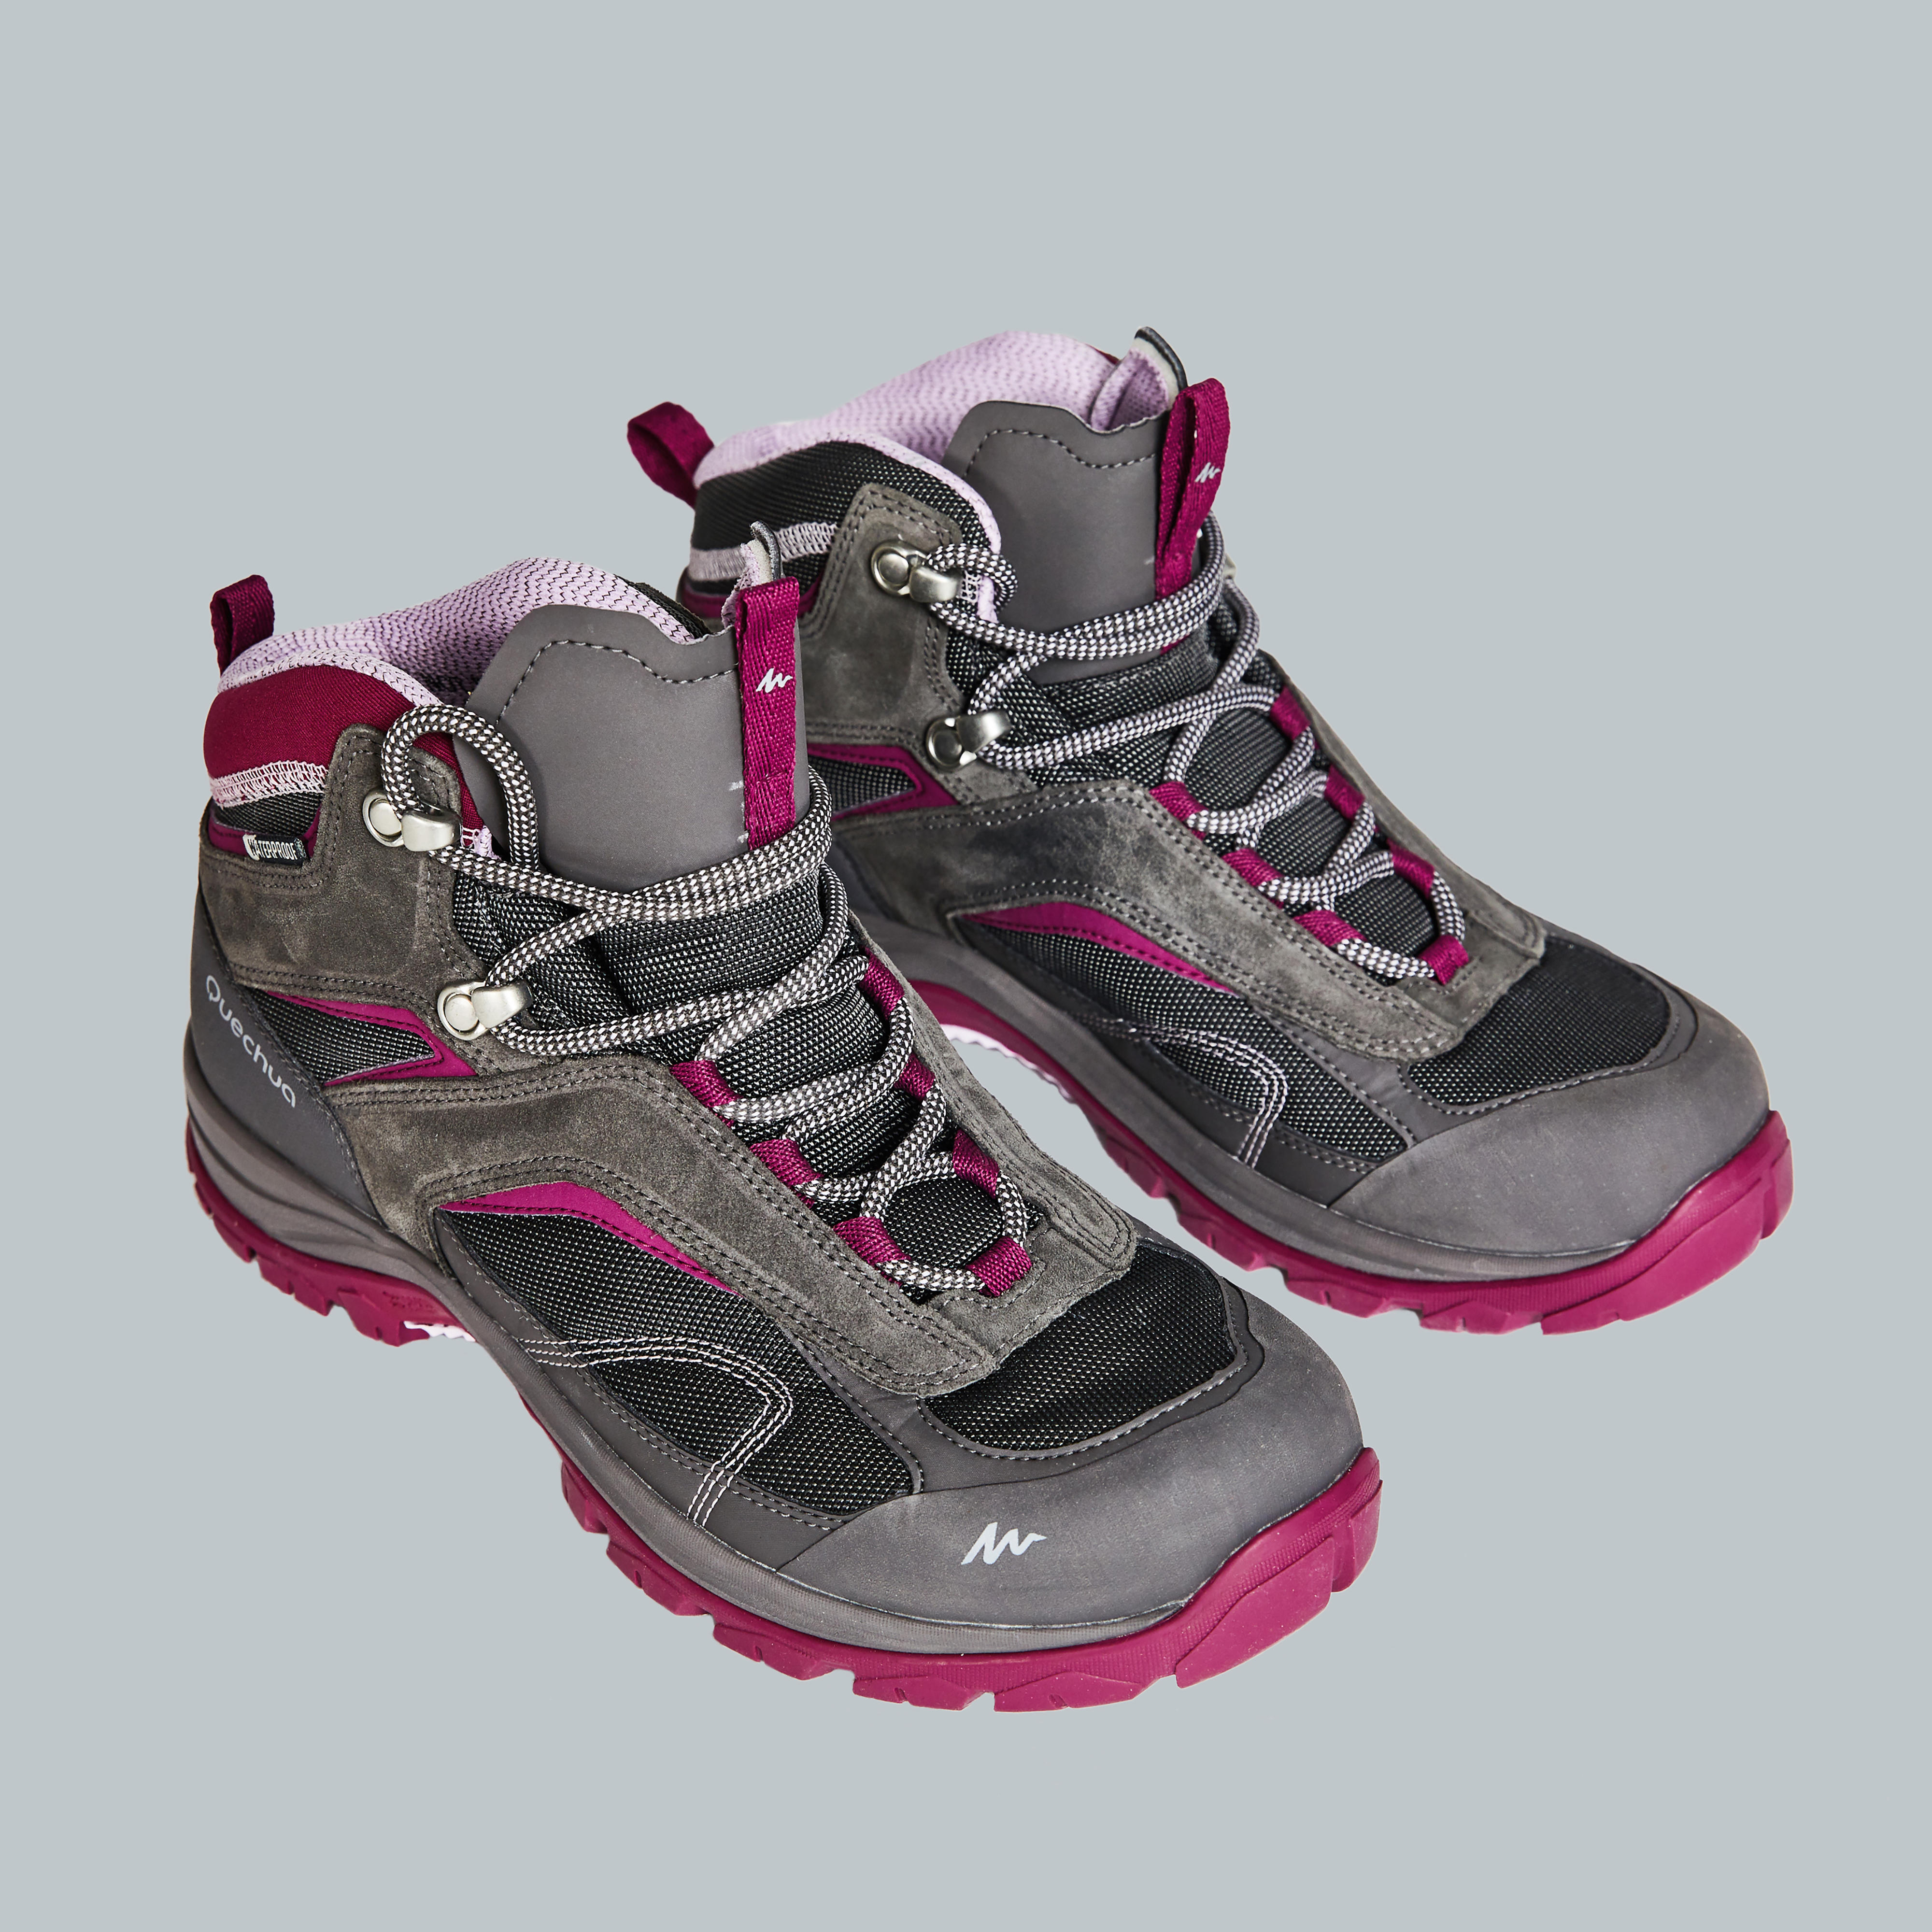 Buy Women's Waterproof Hiking Shoes Online|Quechua Hiking Shoes Women